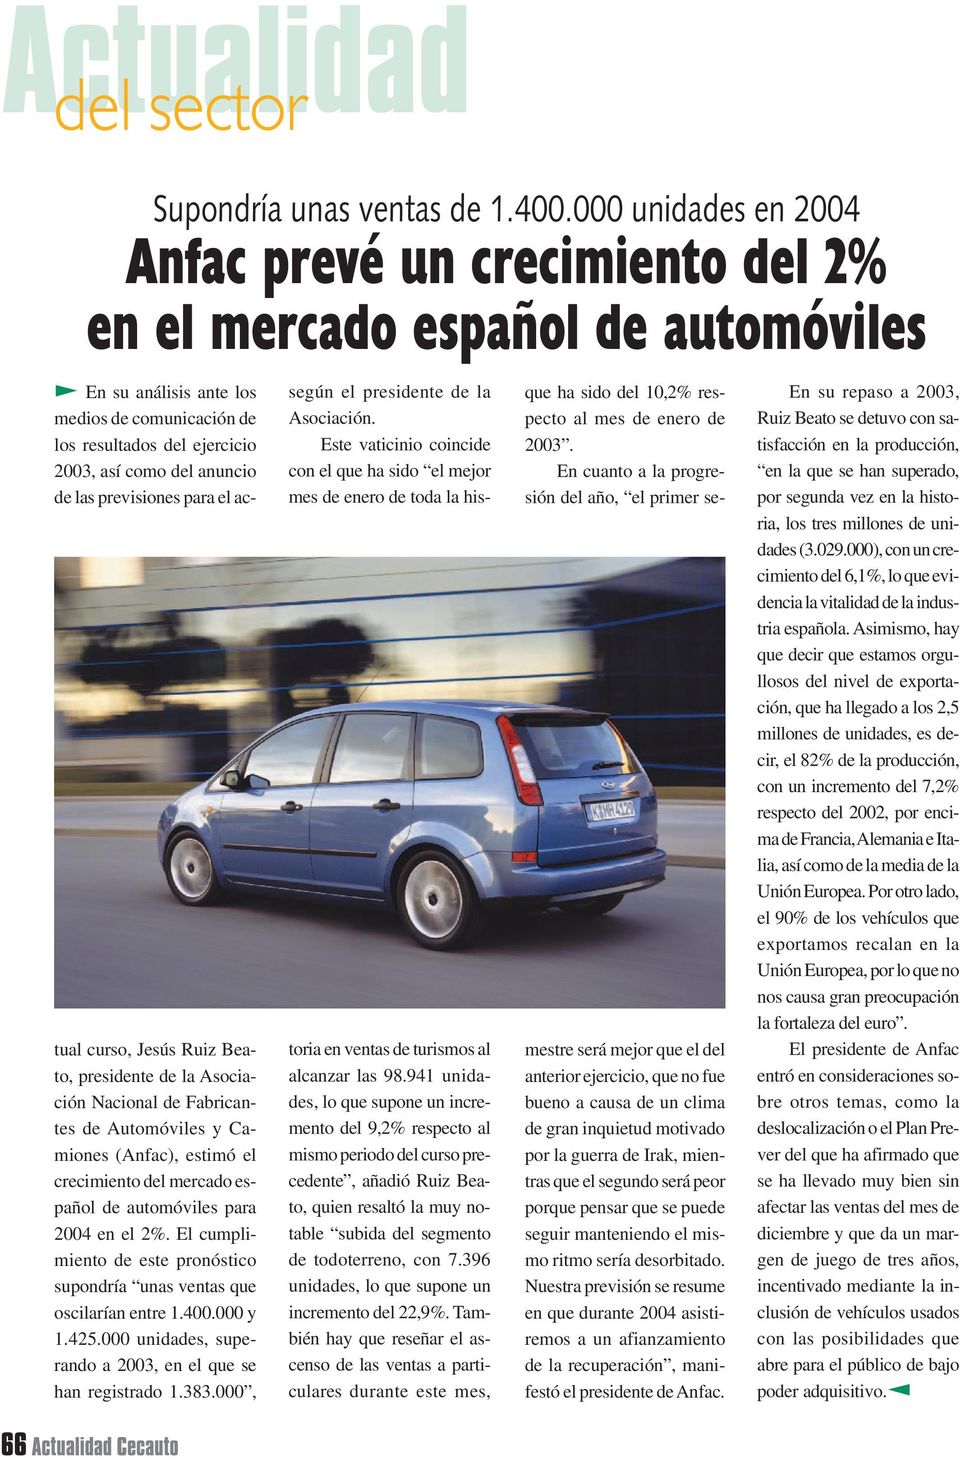 de las previsiones para el actual curso, Jesús Ruiz Beato, presidente de la Asociación Nacional de Fabricantes de Automóviles y Camiones (Anfac), estimó el crecimiento del mercado español de